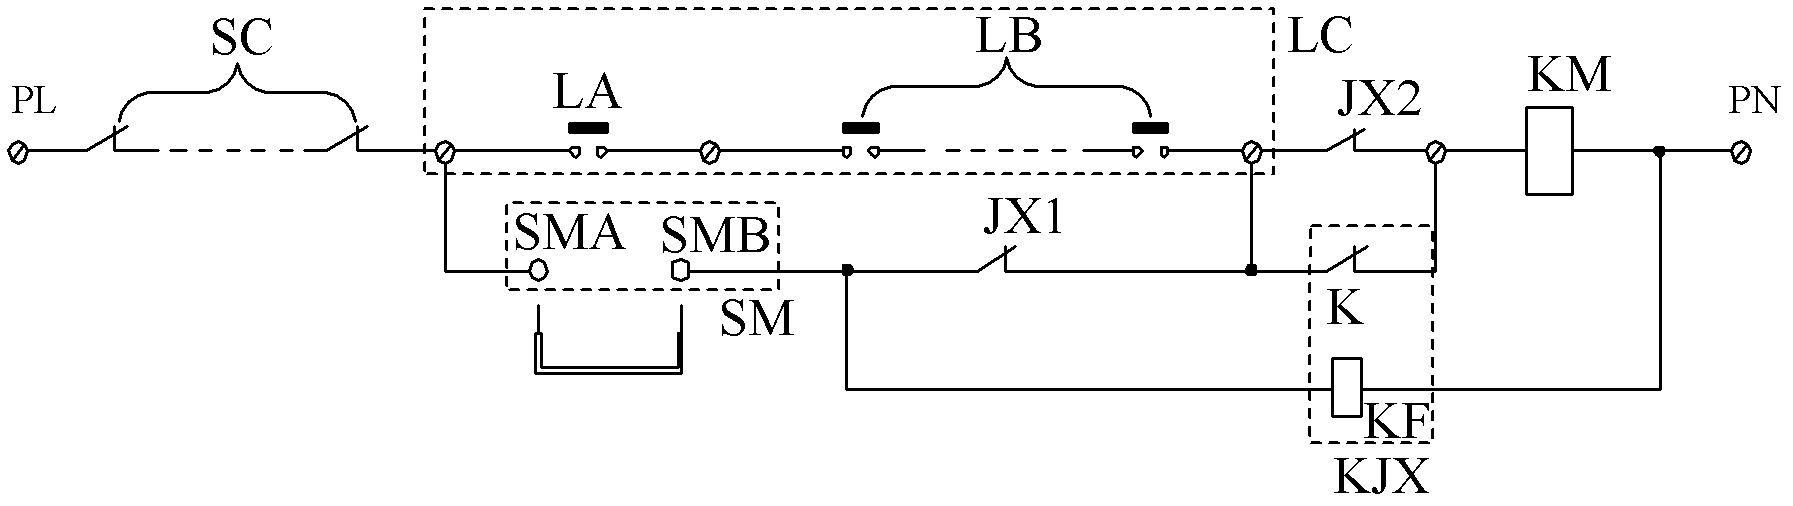 Door interlock short-circuit protection loop for elevator